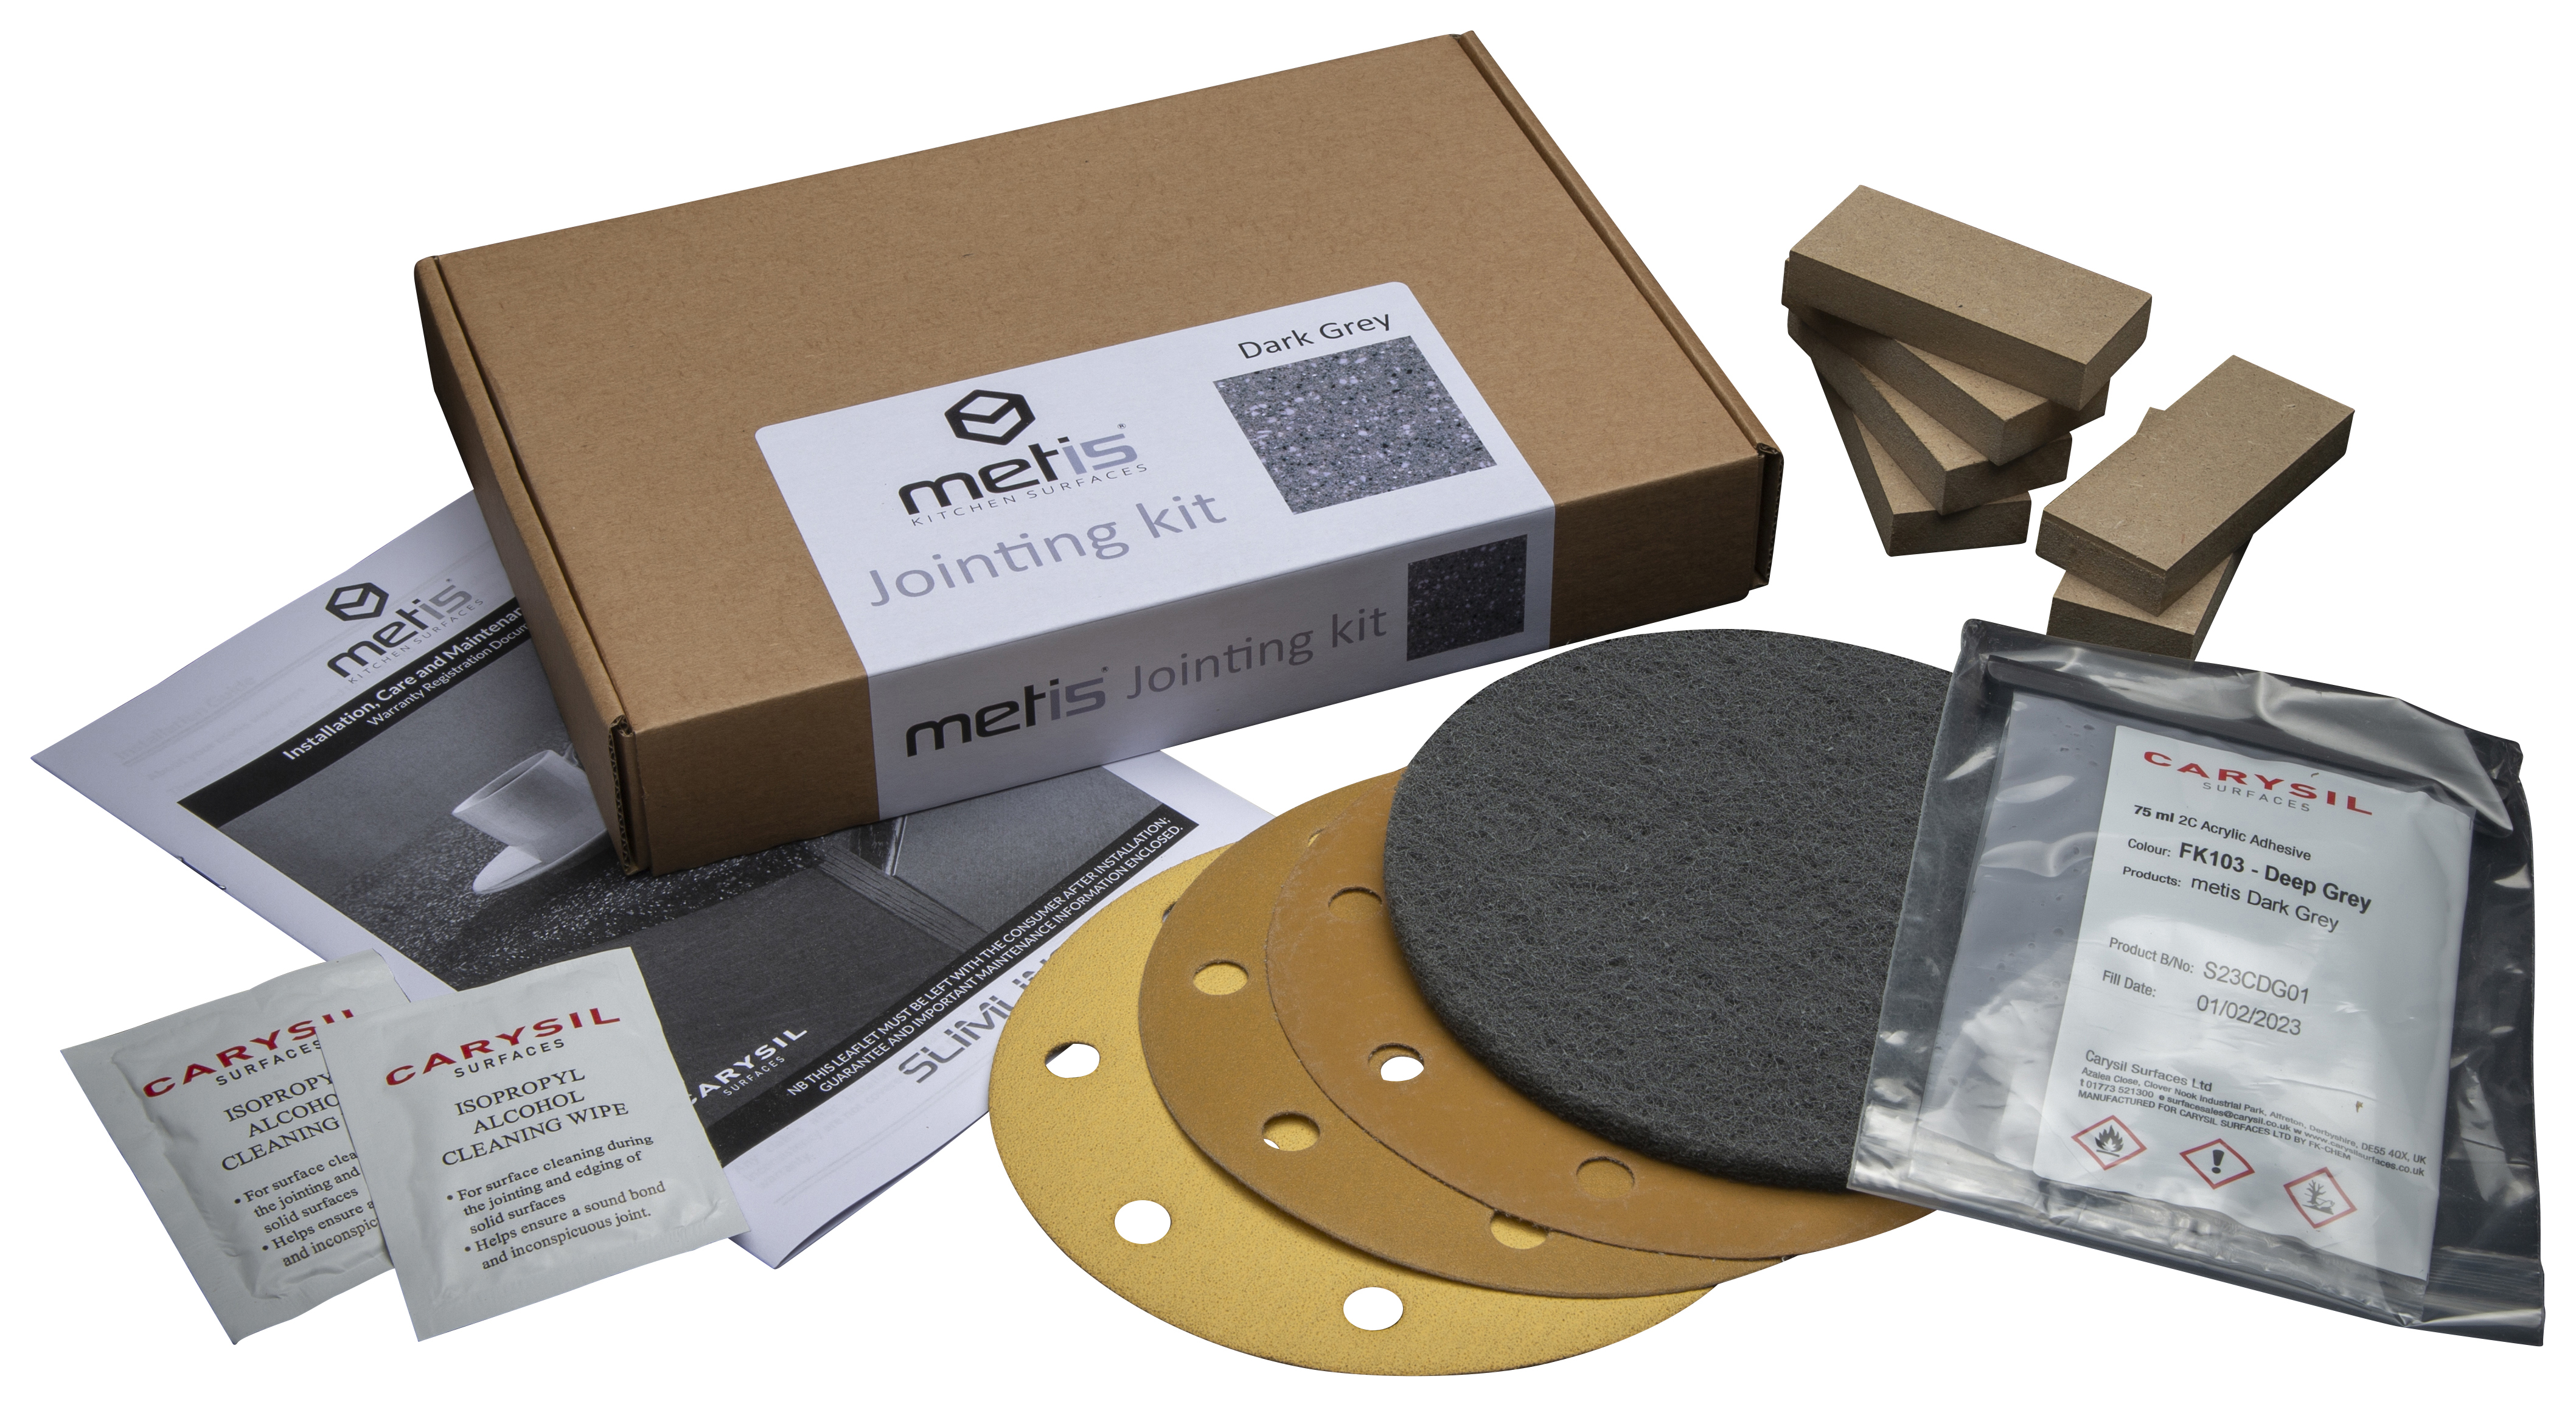 Metis black joint kit